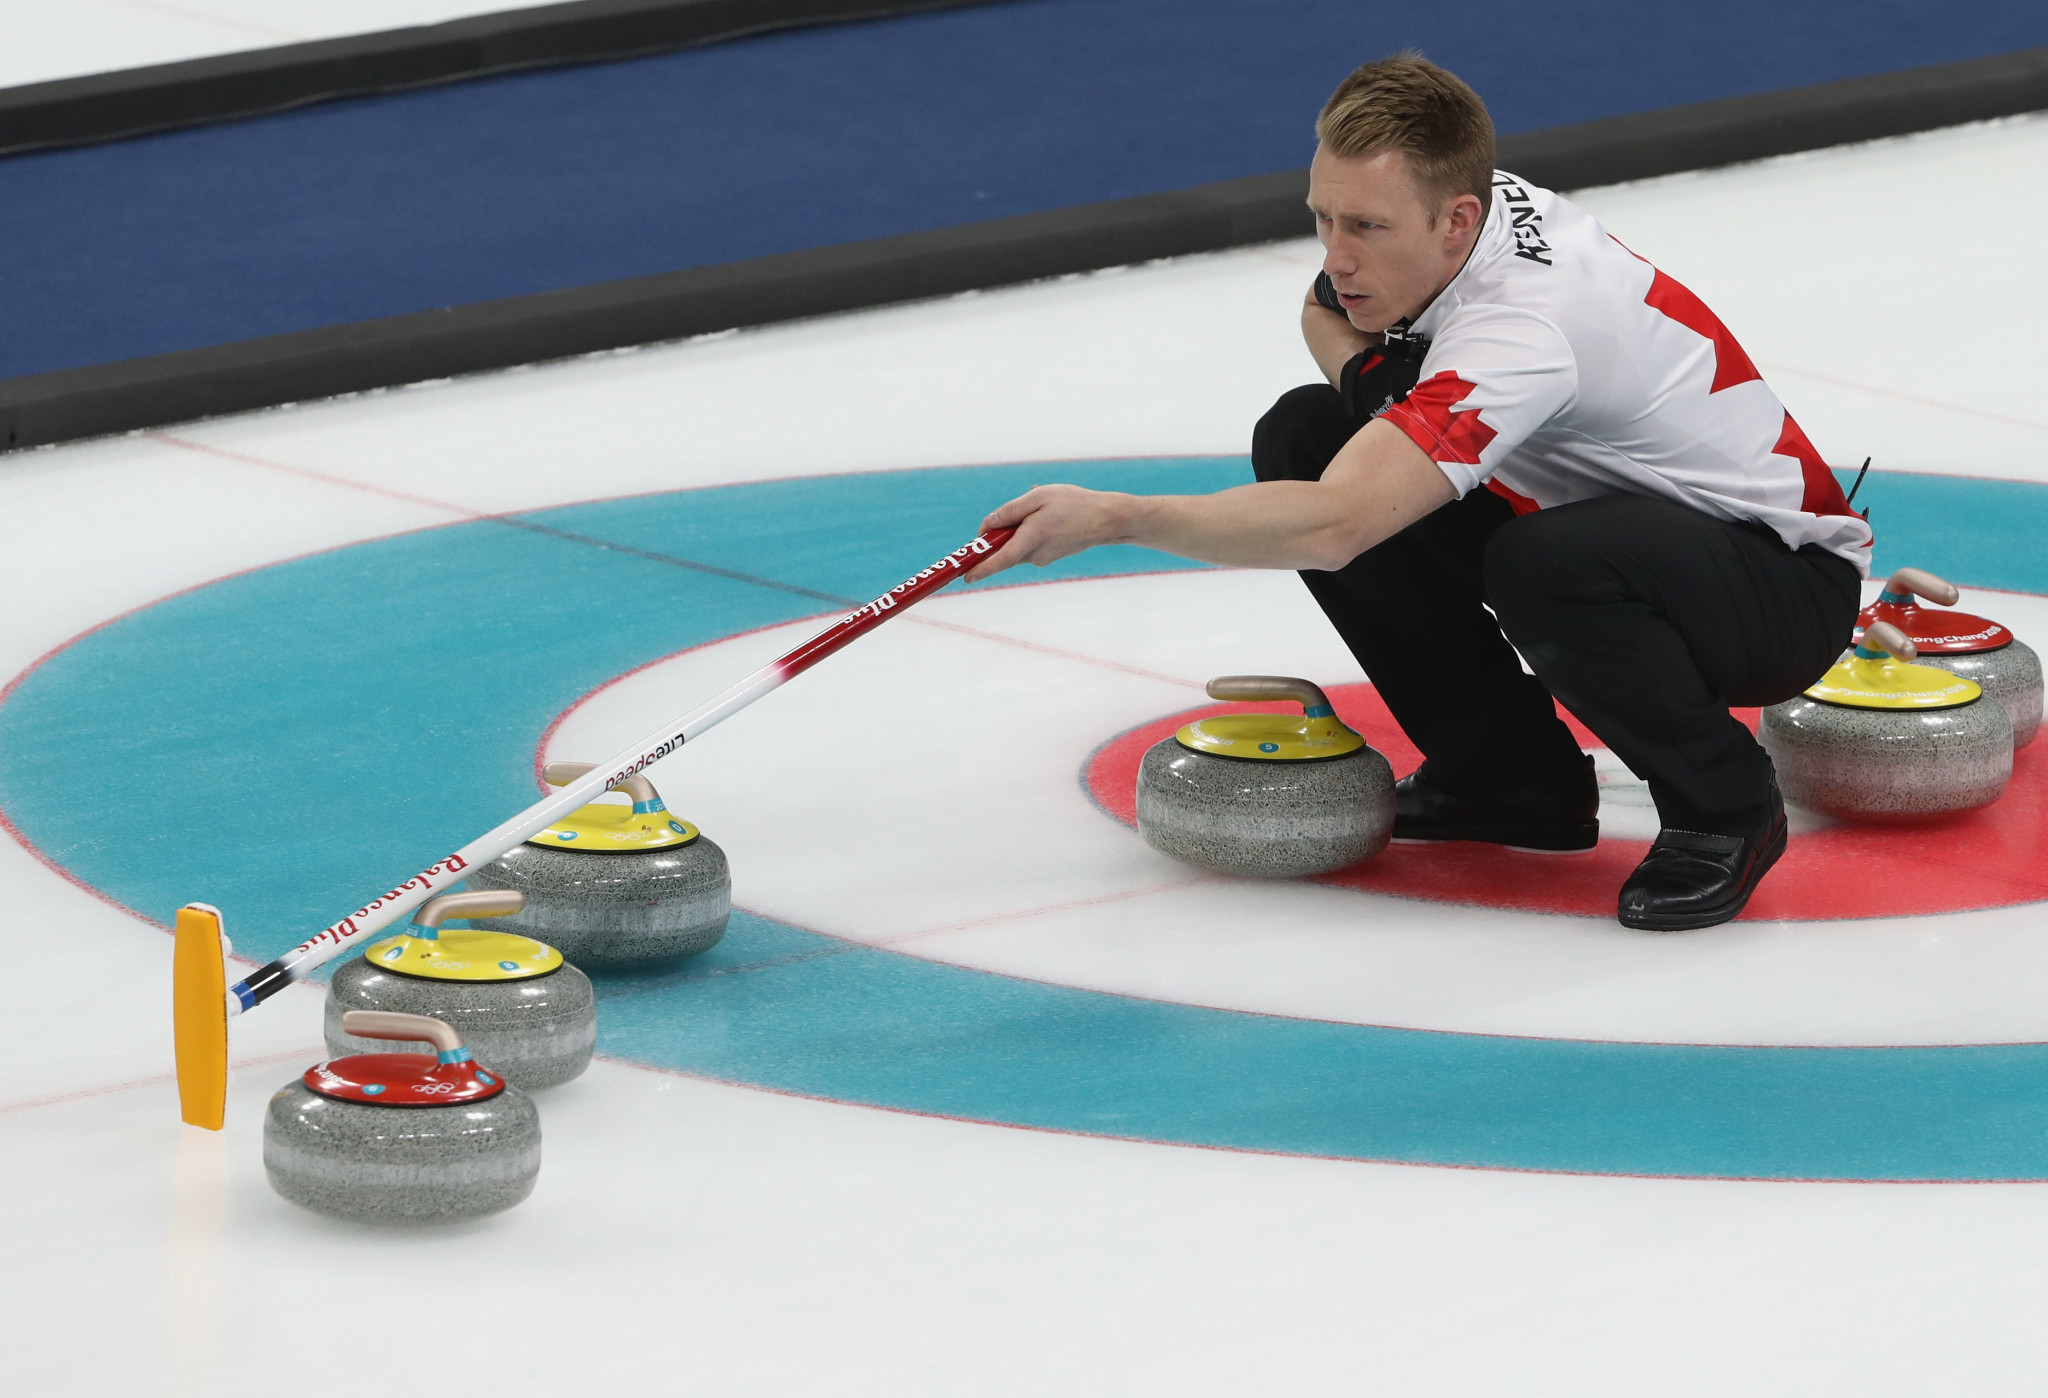 Le Championnat du monde de curling masculin aura également lieu dans la bulle de Calgary © Getty Images